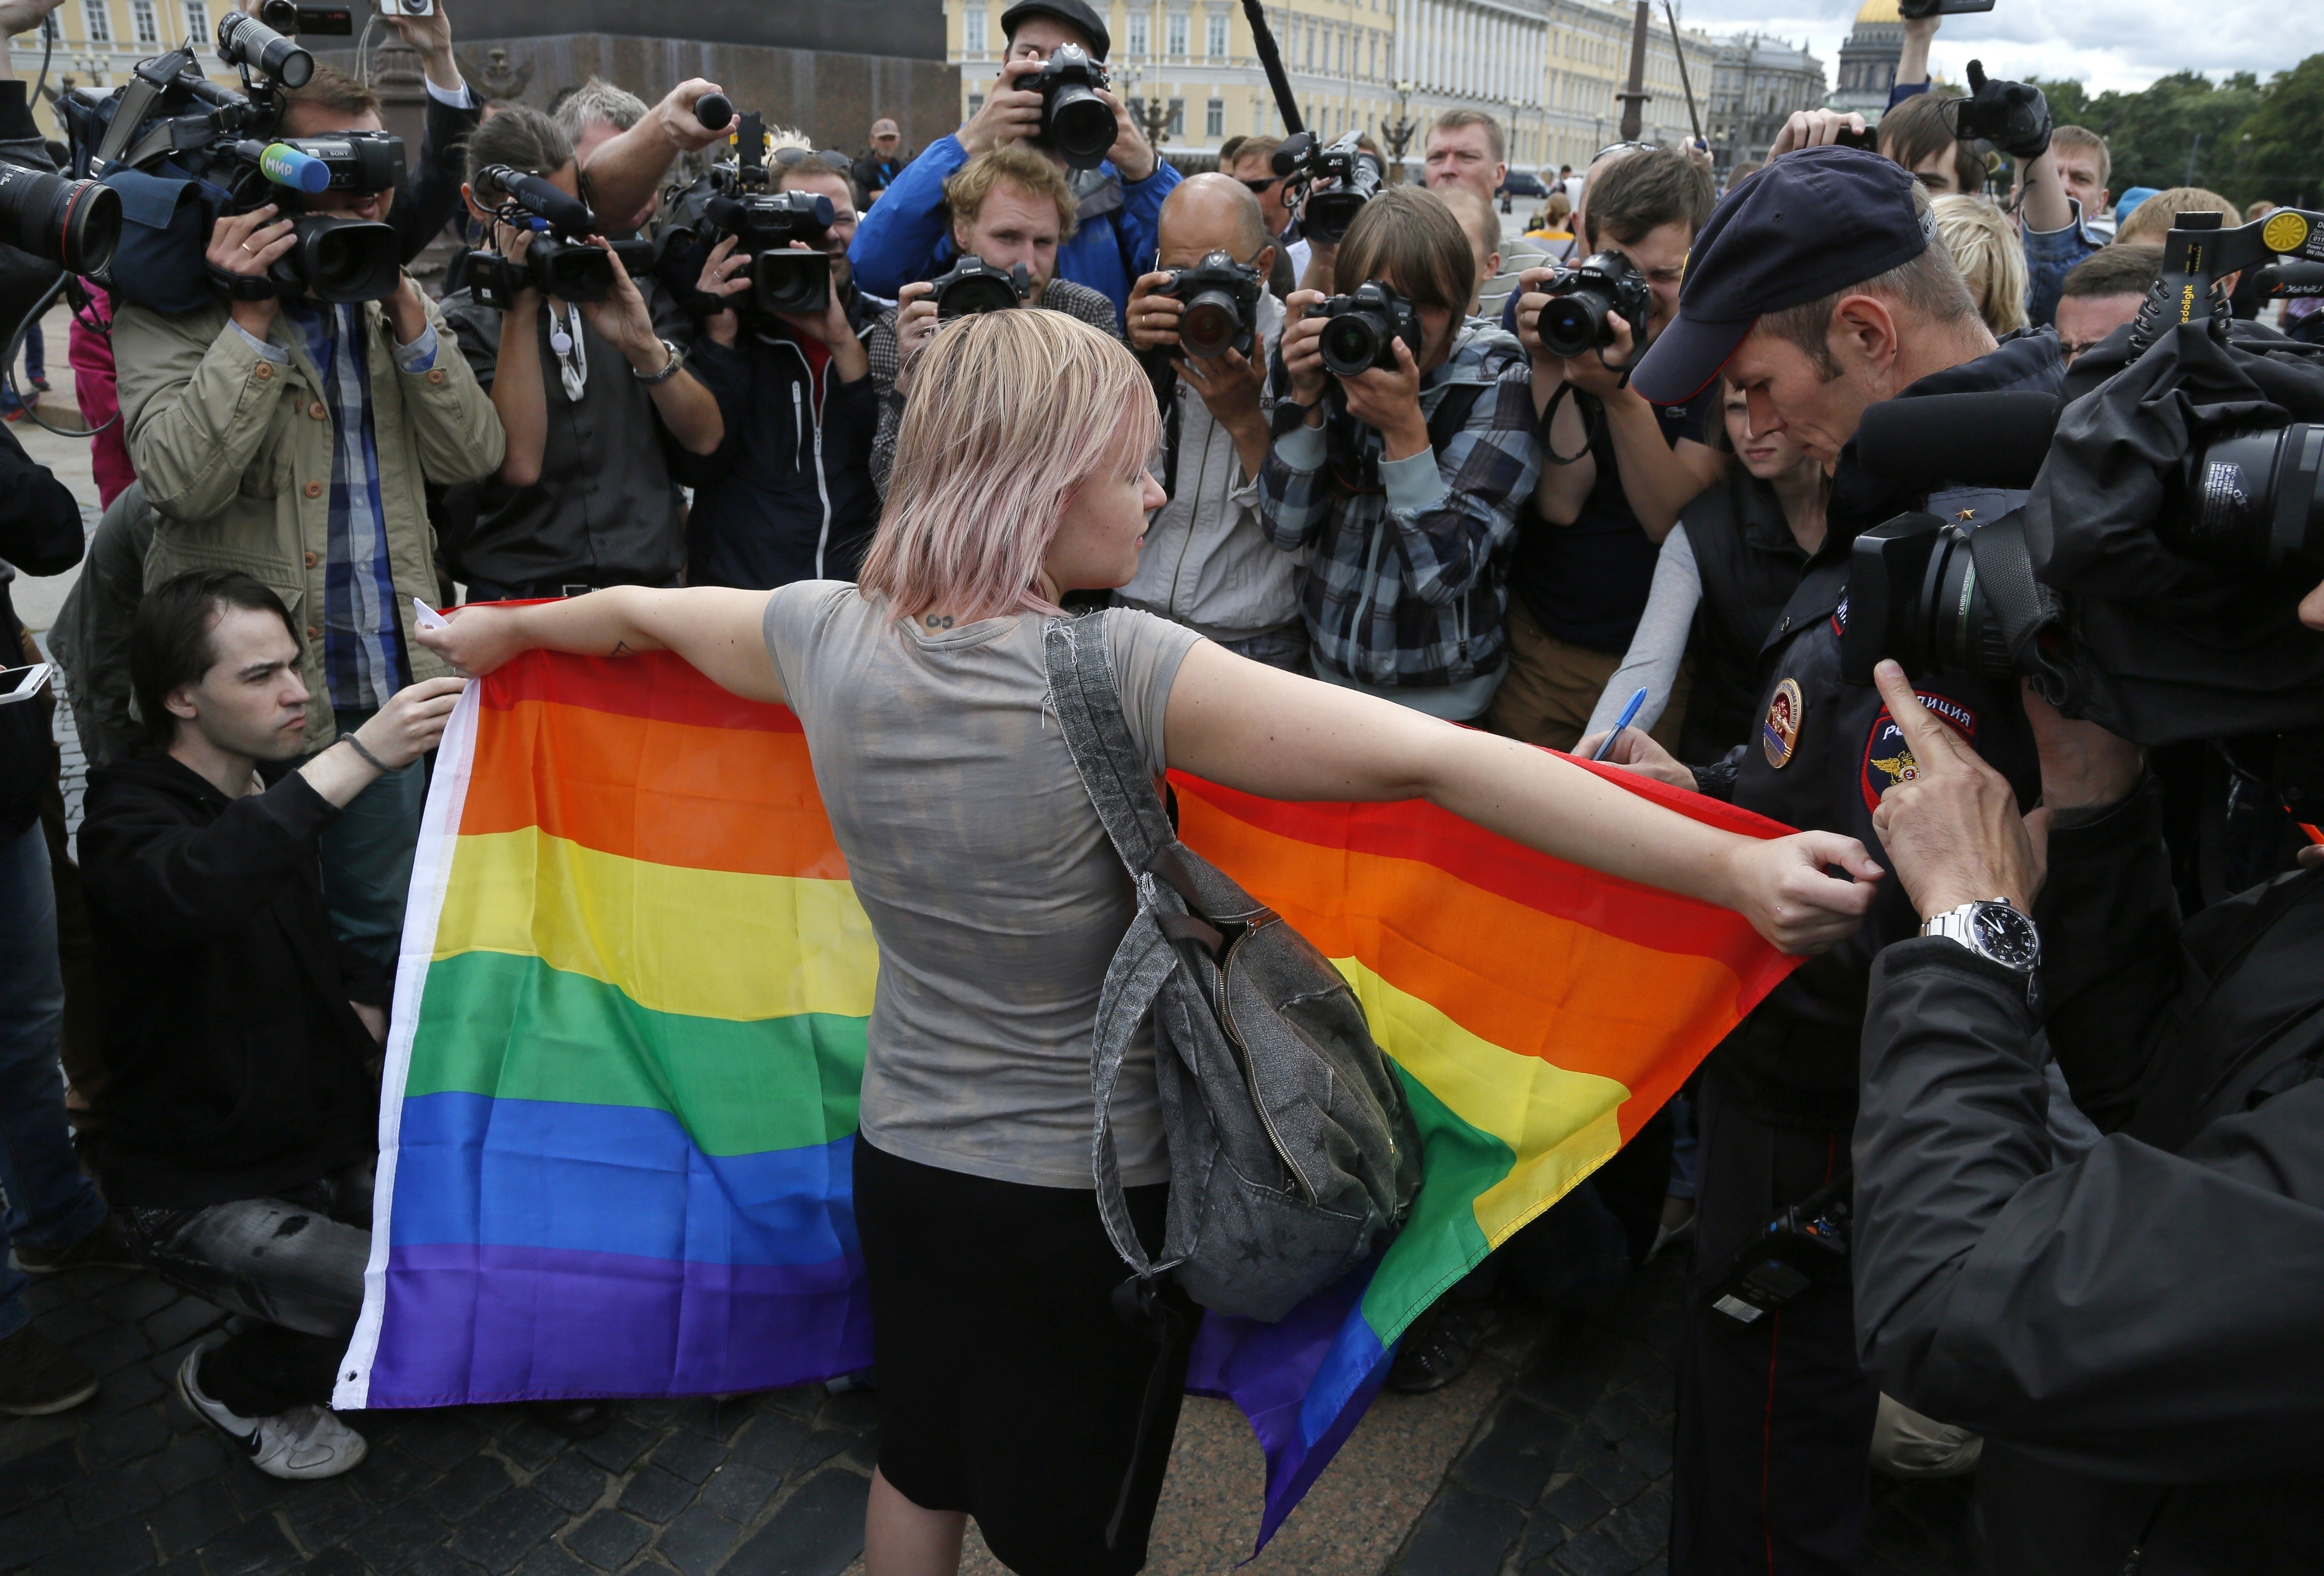 Grupos de defesa LGBTQ+ passam a ser considerados organizações extremistas na Rússia